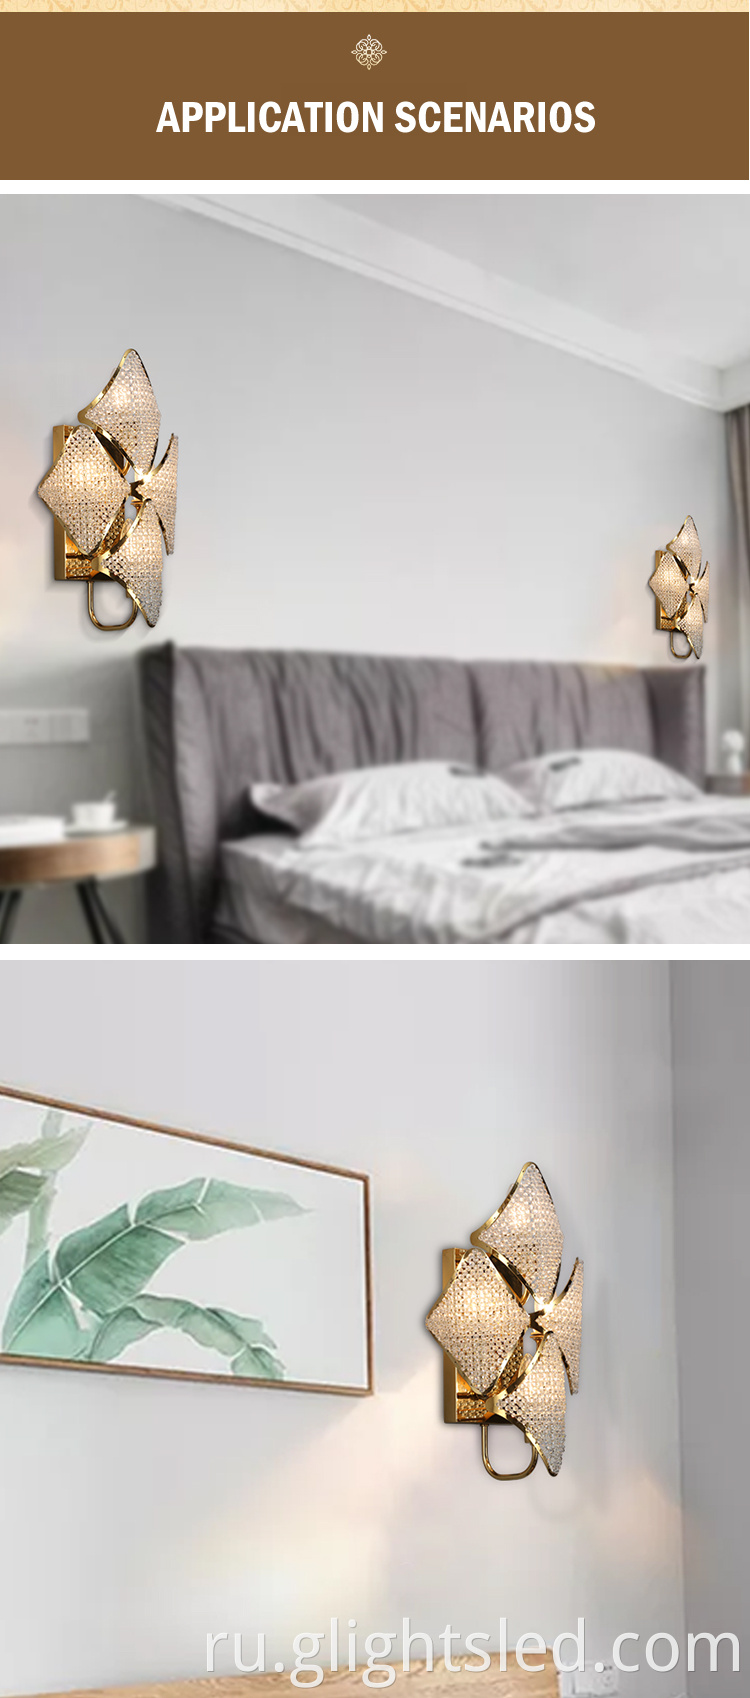 G-Lights Горячий продавать современный дизайнерский внутренний декоративный светодиодный настенный светильник для спальни